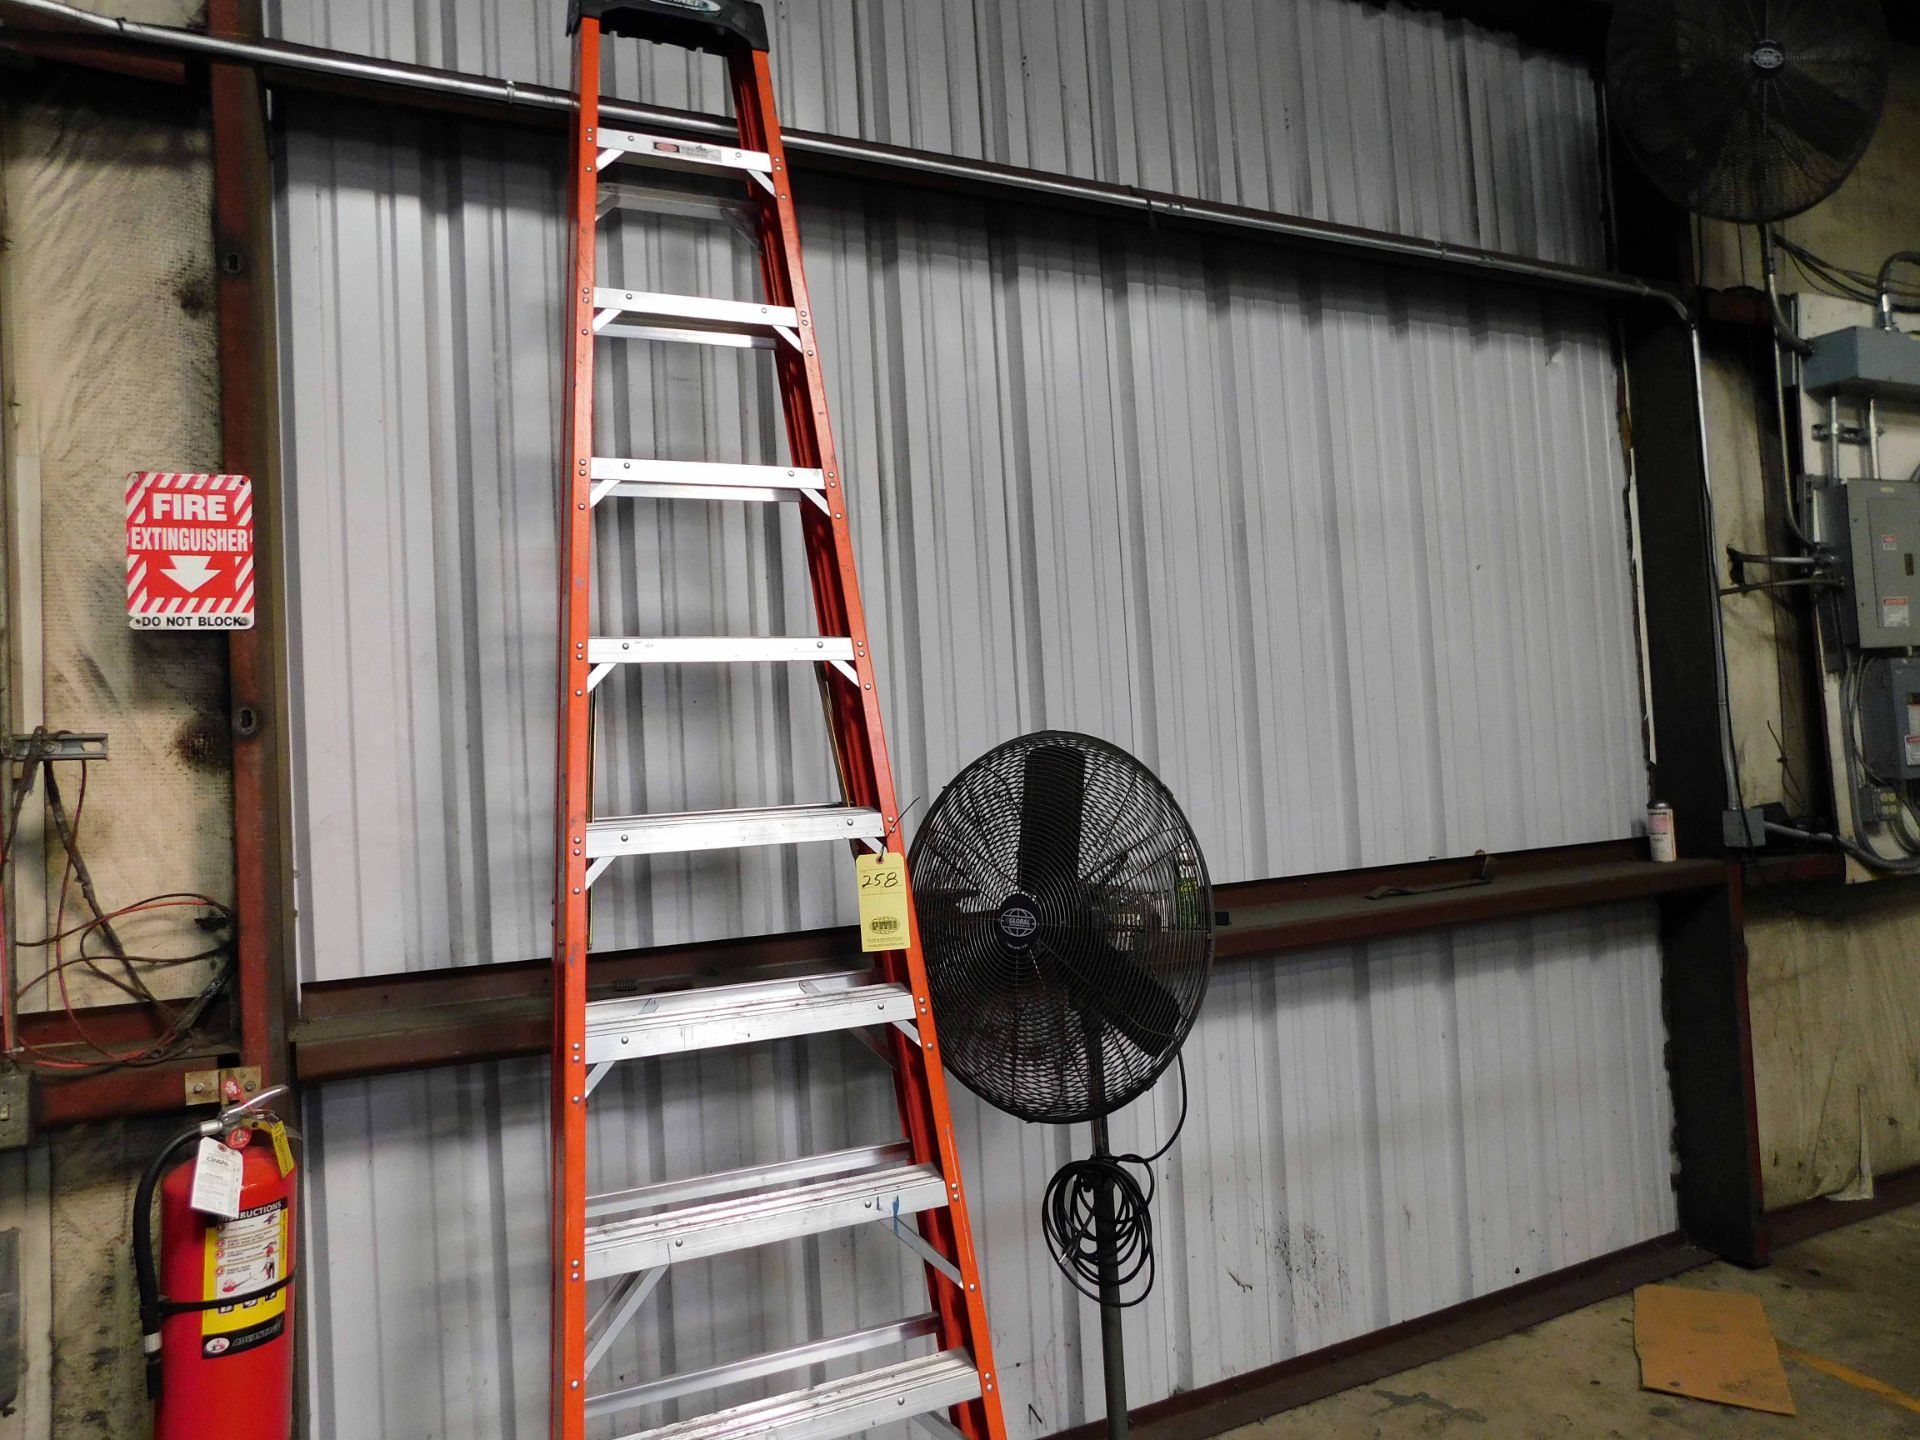 LOT CONSISTING OF: 10' A-frame ladder & pedestal fan